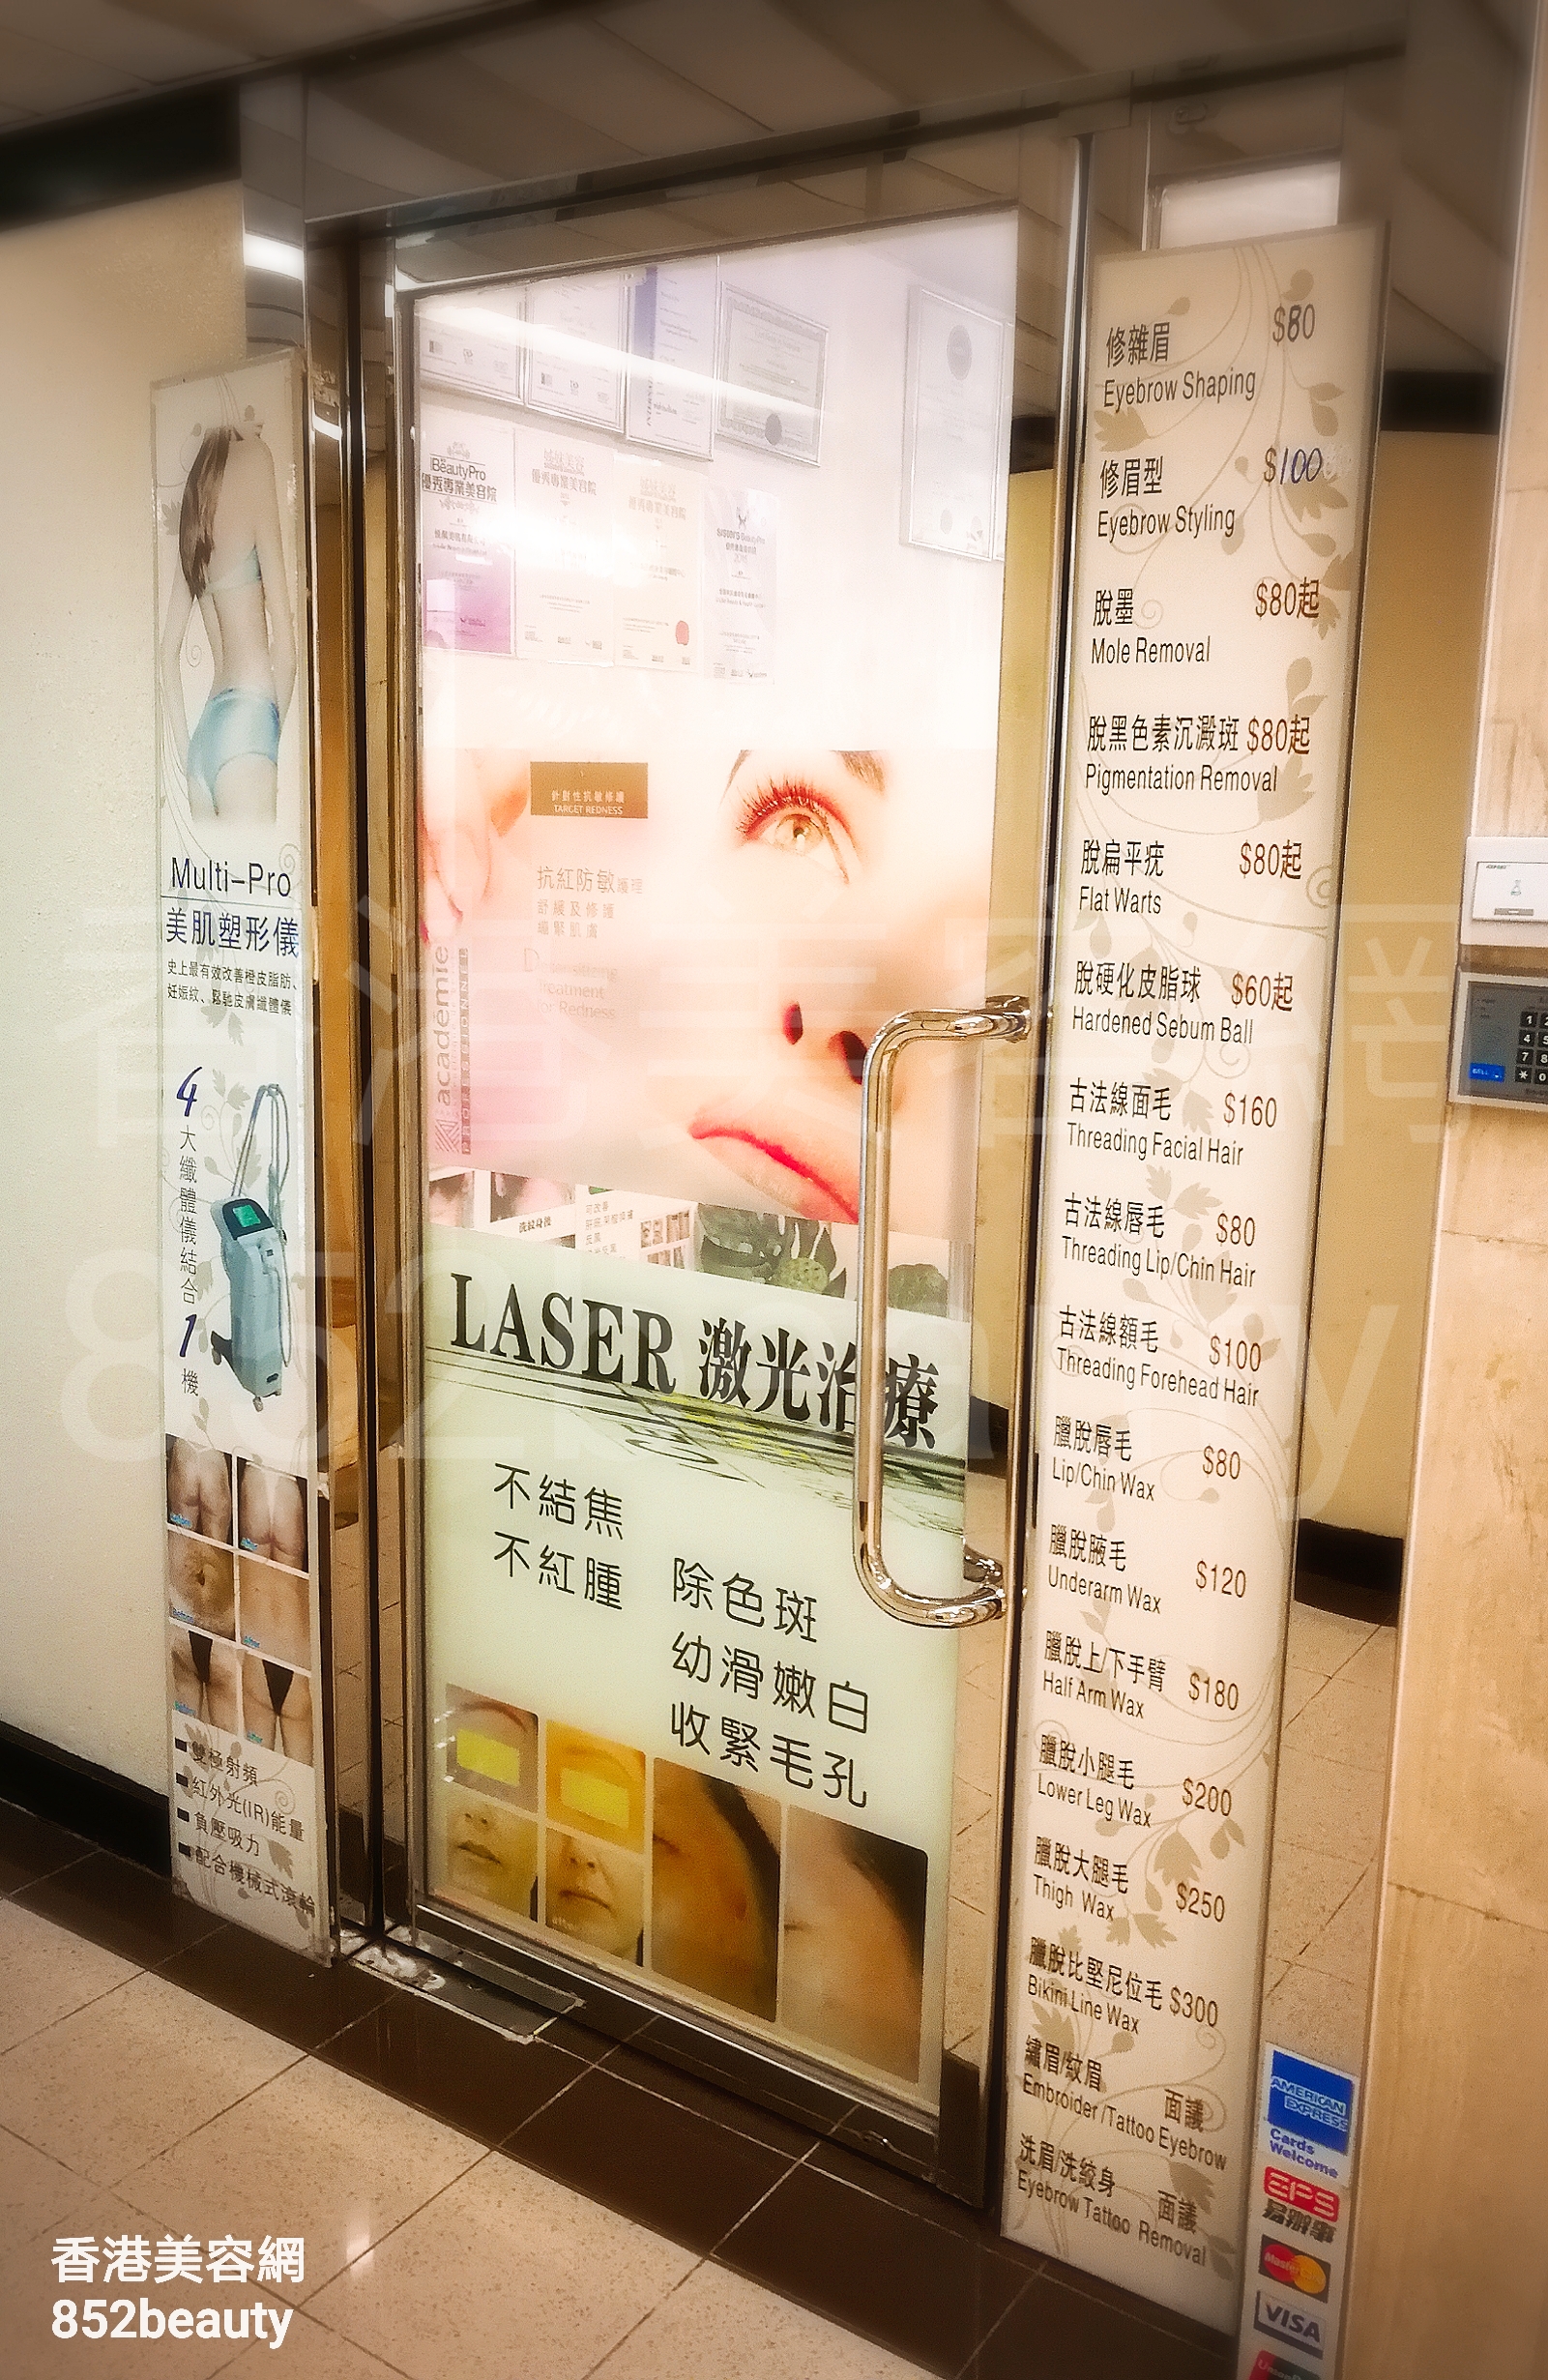 香港美容網 Hong Kong Beauty Salon 美容院 / 美容師: 悅顏美肌